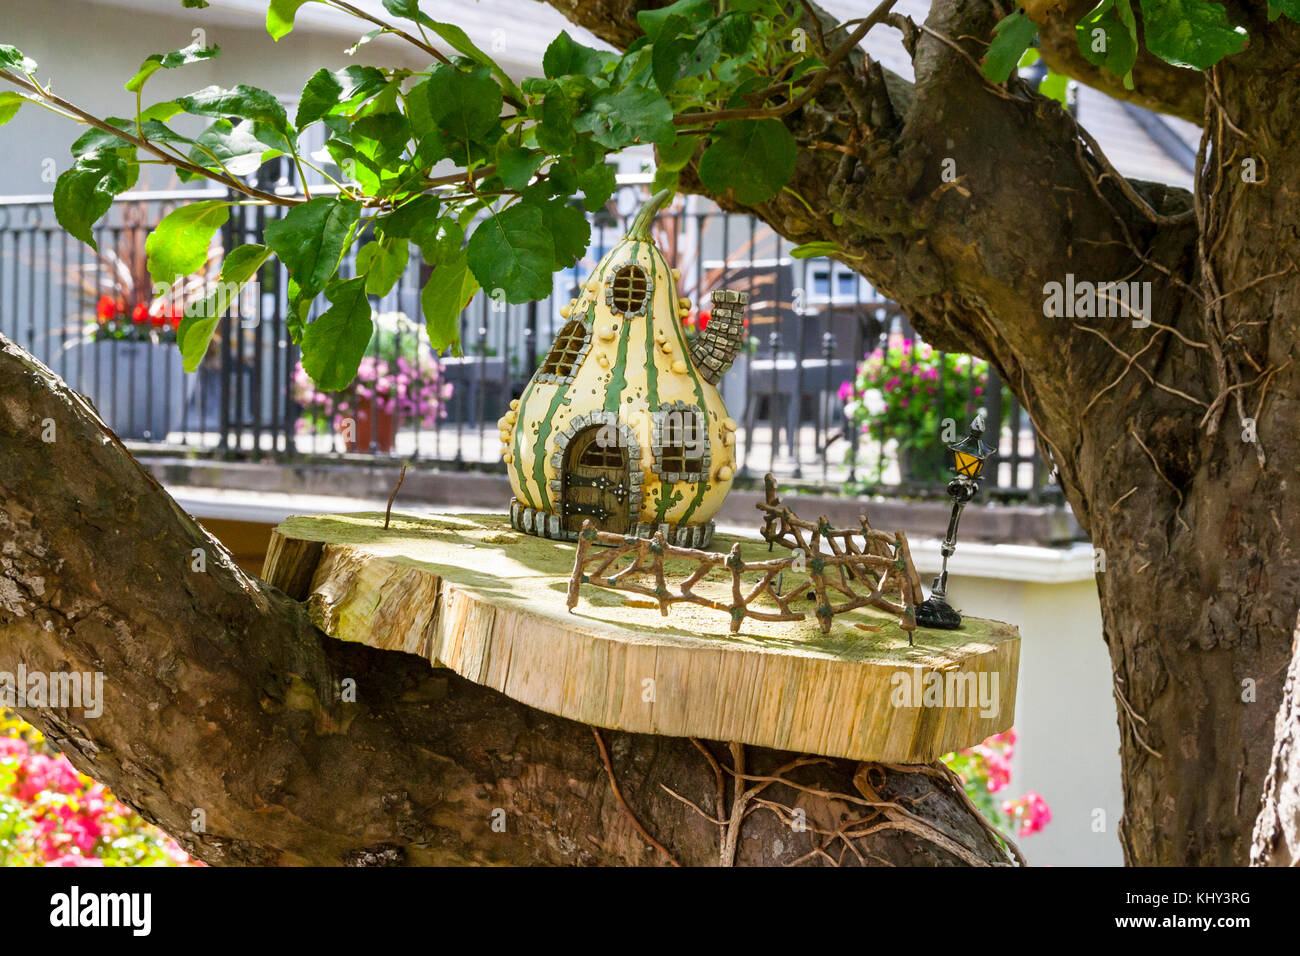 Holz- fee Haus mit einem Lattenzaun und Lamp Post auf einer Plattform auf dem Ast eines Baumes für die Feen in einem märchenhaften Garten platziert Stockfoto